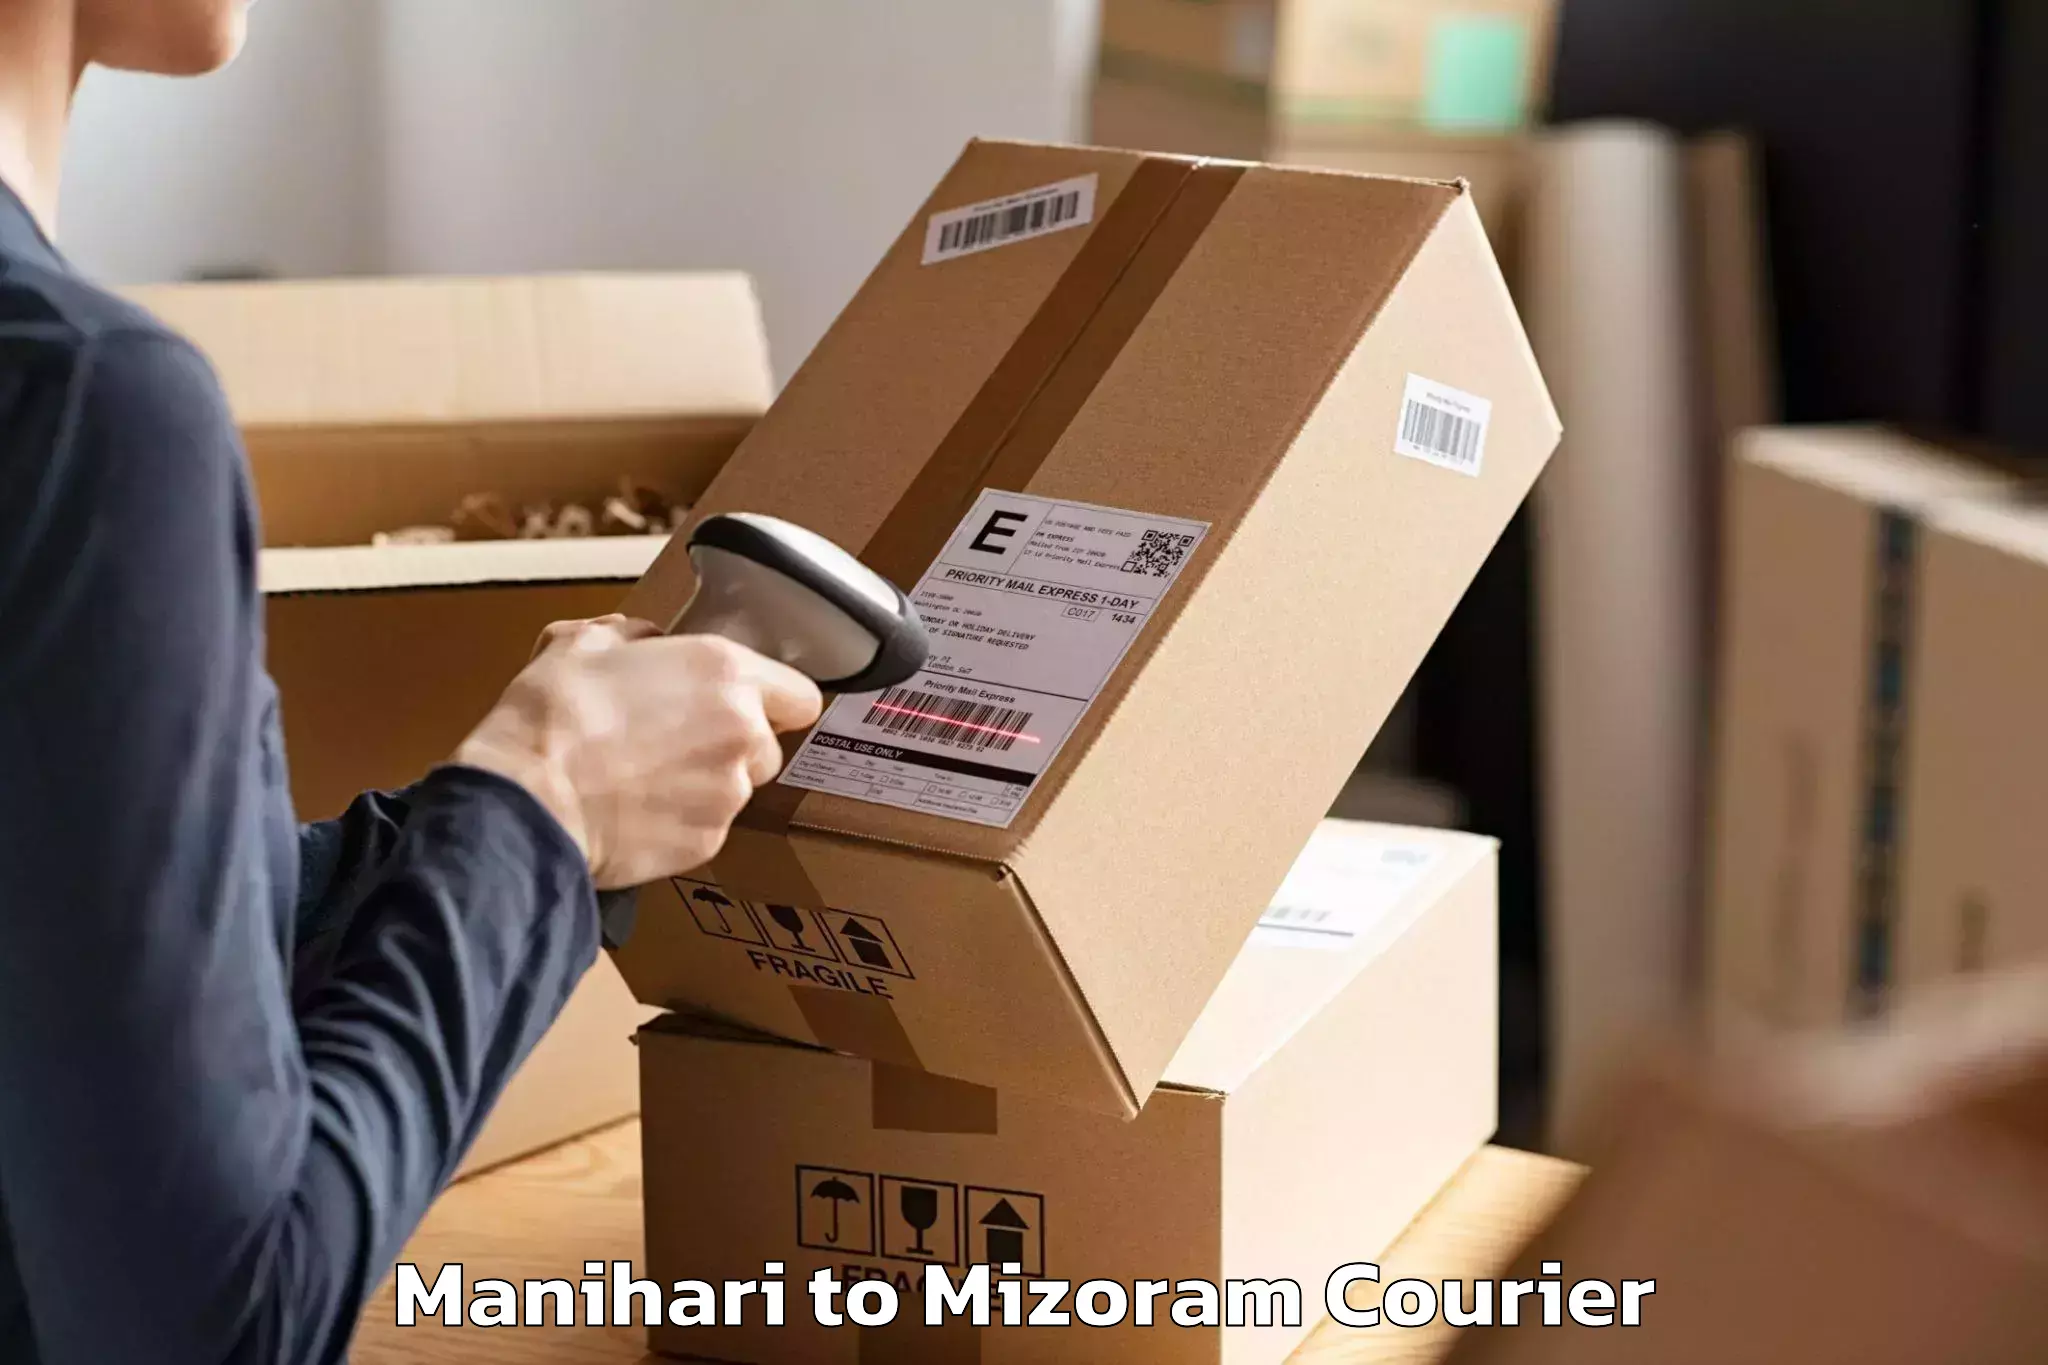 Professional movers Manihari to Mizoram